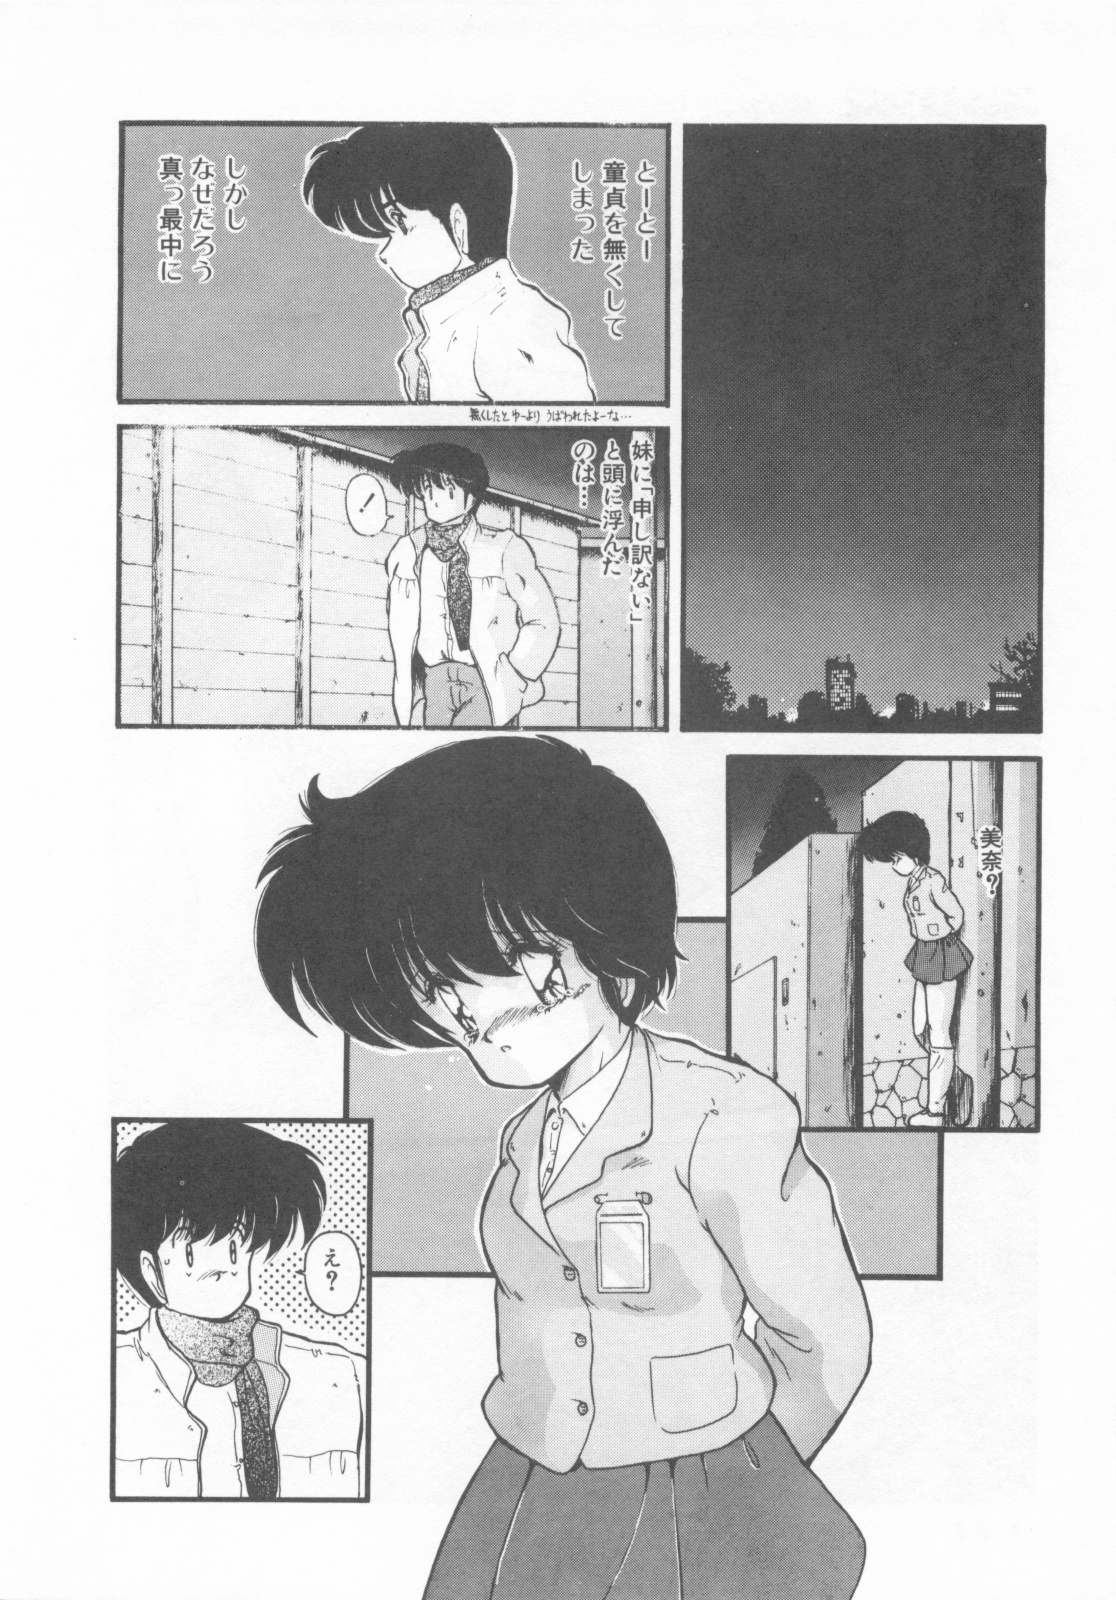 [Makuwa] Gomenne Mina-chan 1 page 30 full